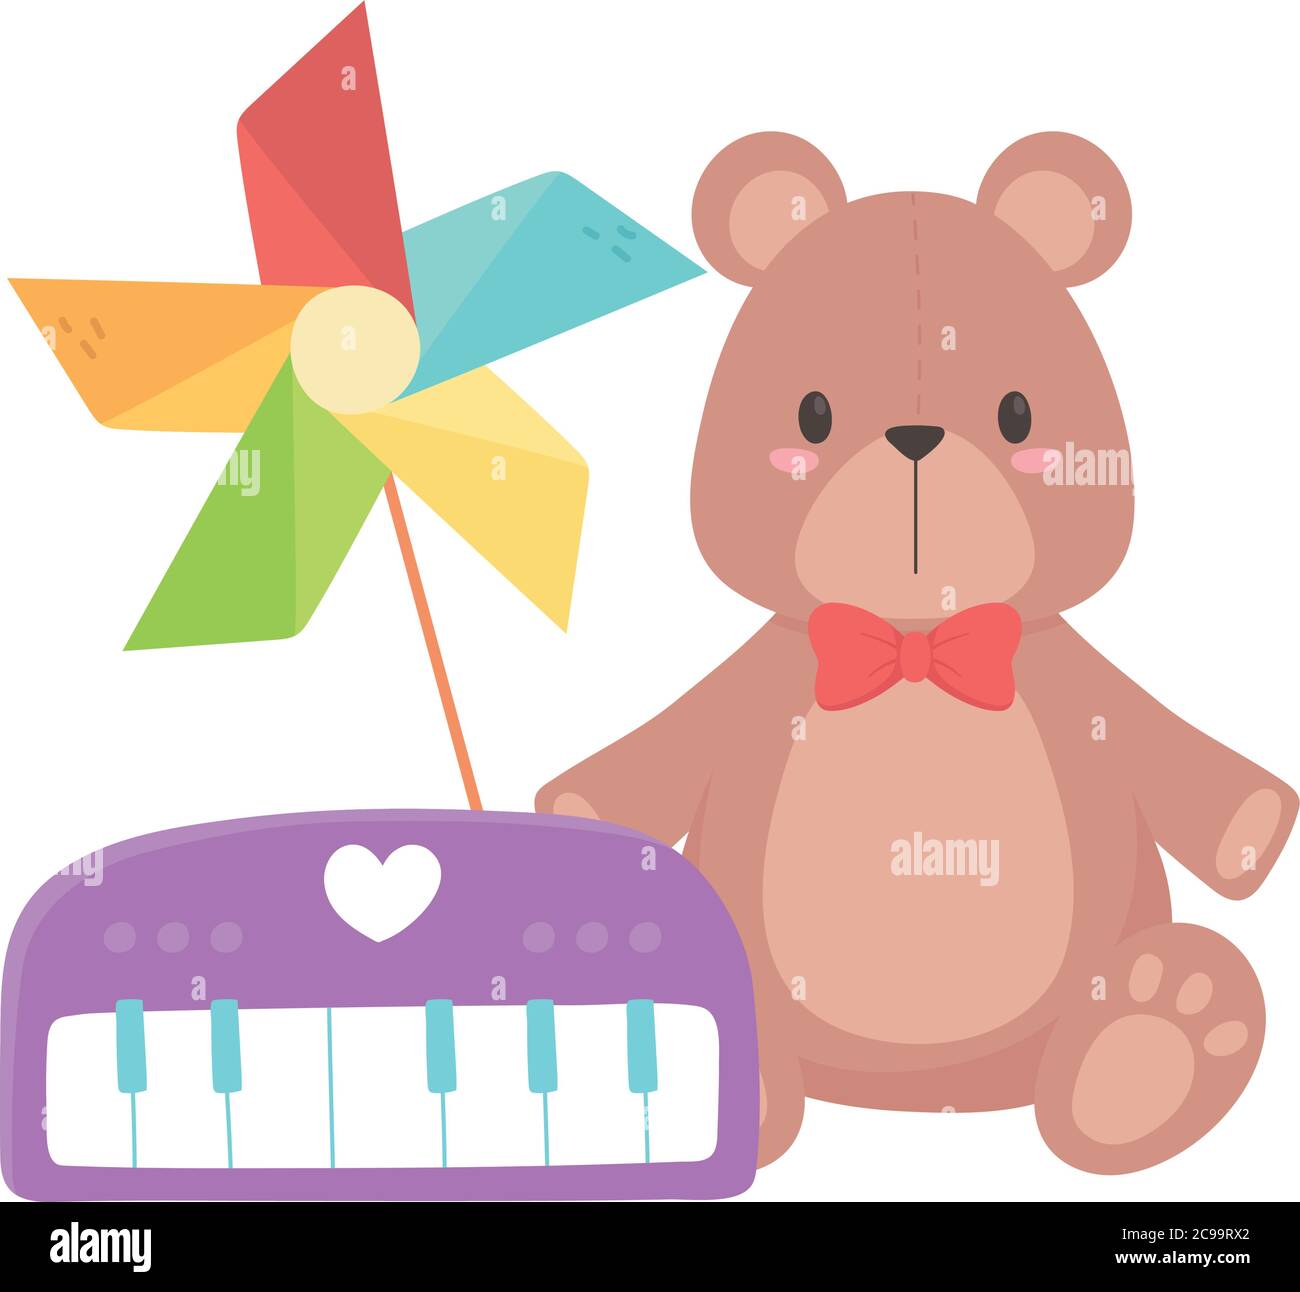 Kinder Spielzeug Objekt amüsant Cartoon Klavier Windrad und Teddybär Vektor Illustration Stock Vektor